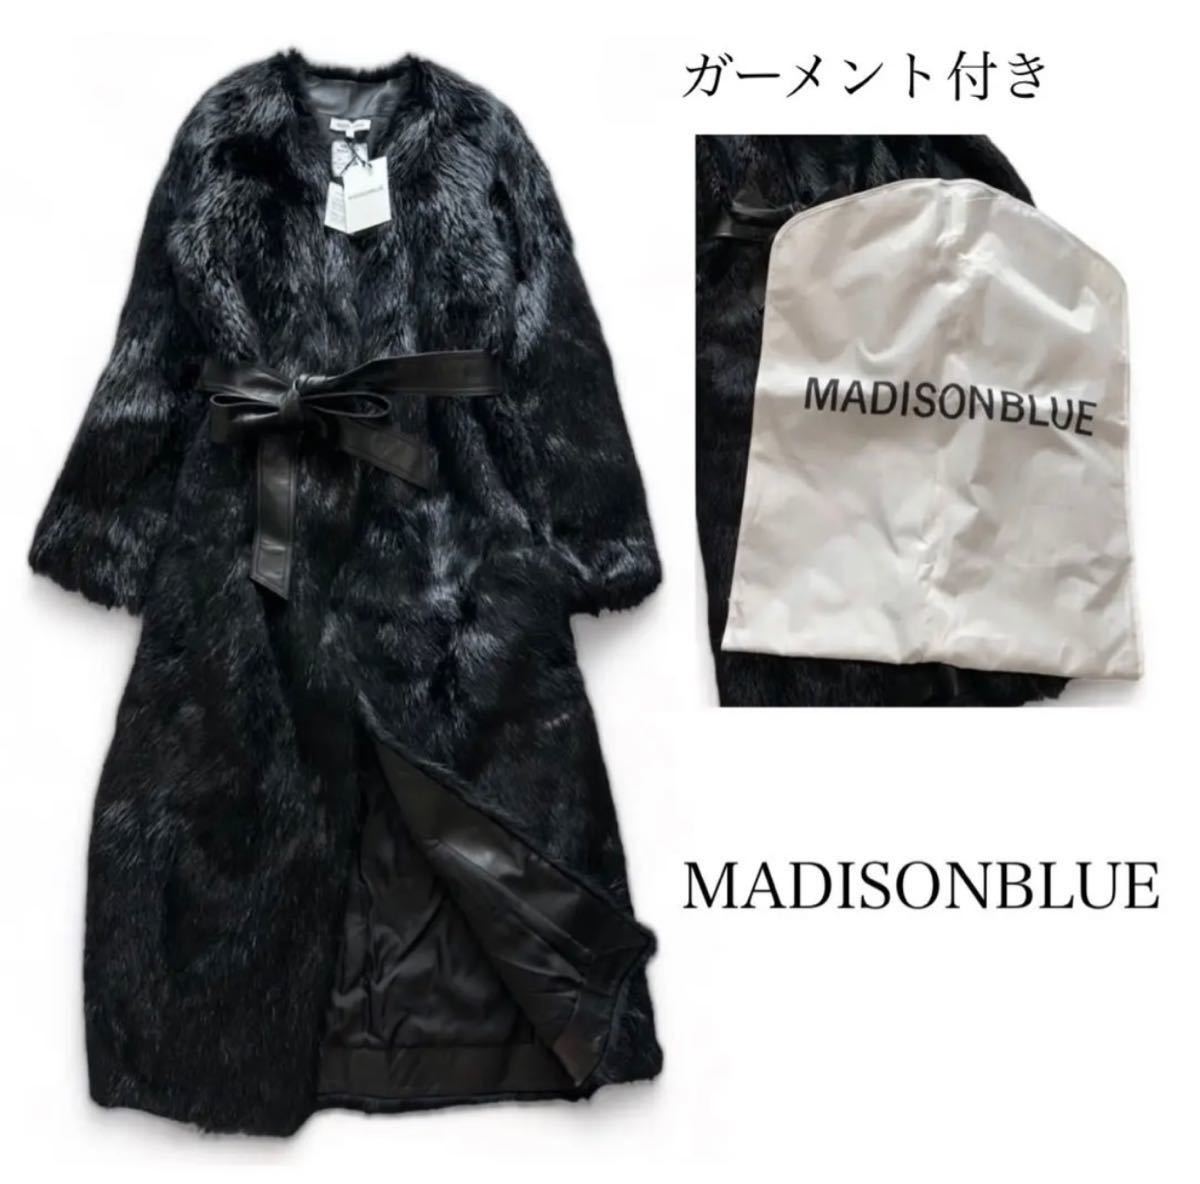 【新品】MADISONBLUE マディソンブルー /ヌートリア リバーシブル ファー ロングコート /定価60万 /ガーメント付